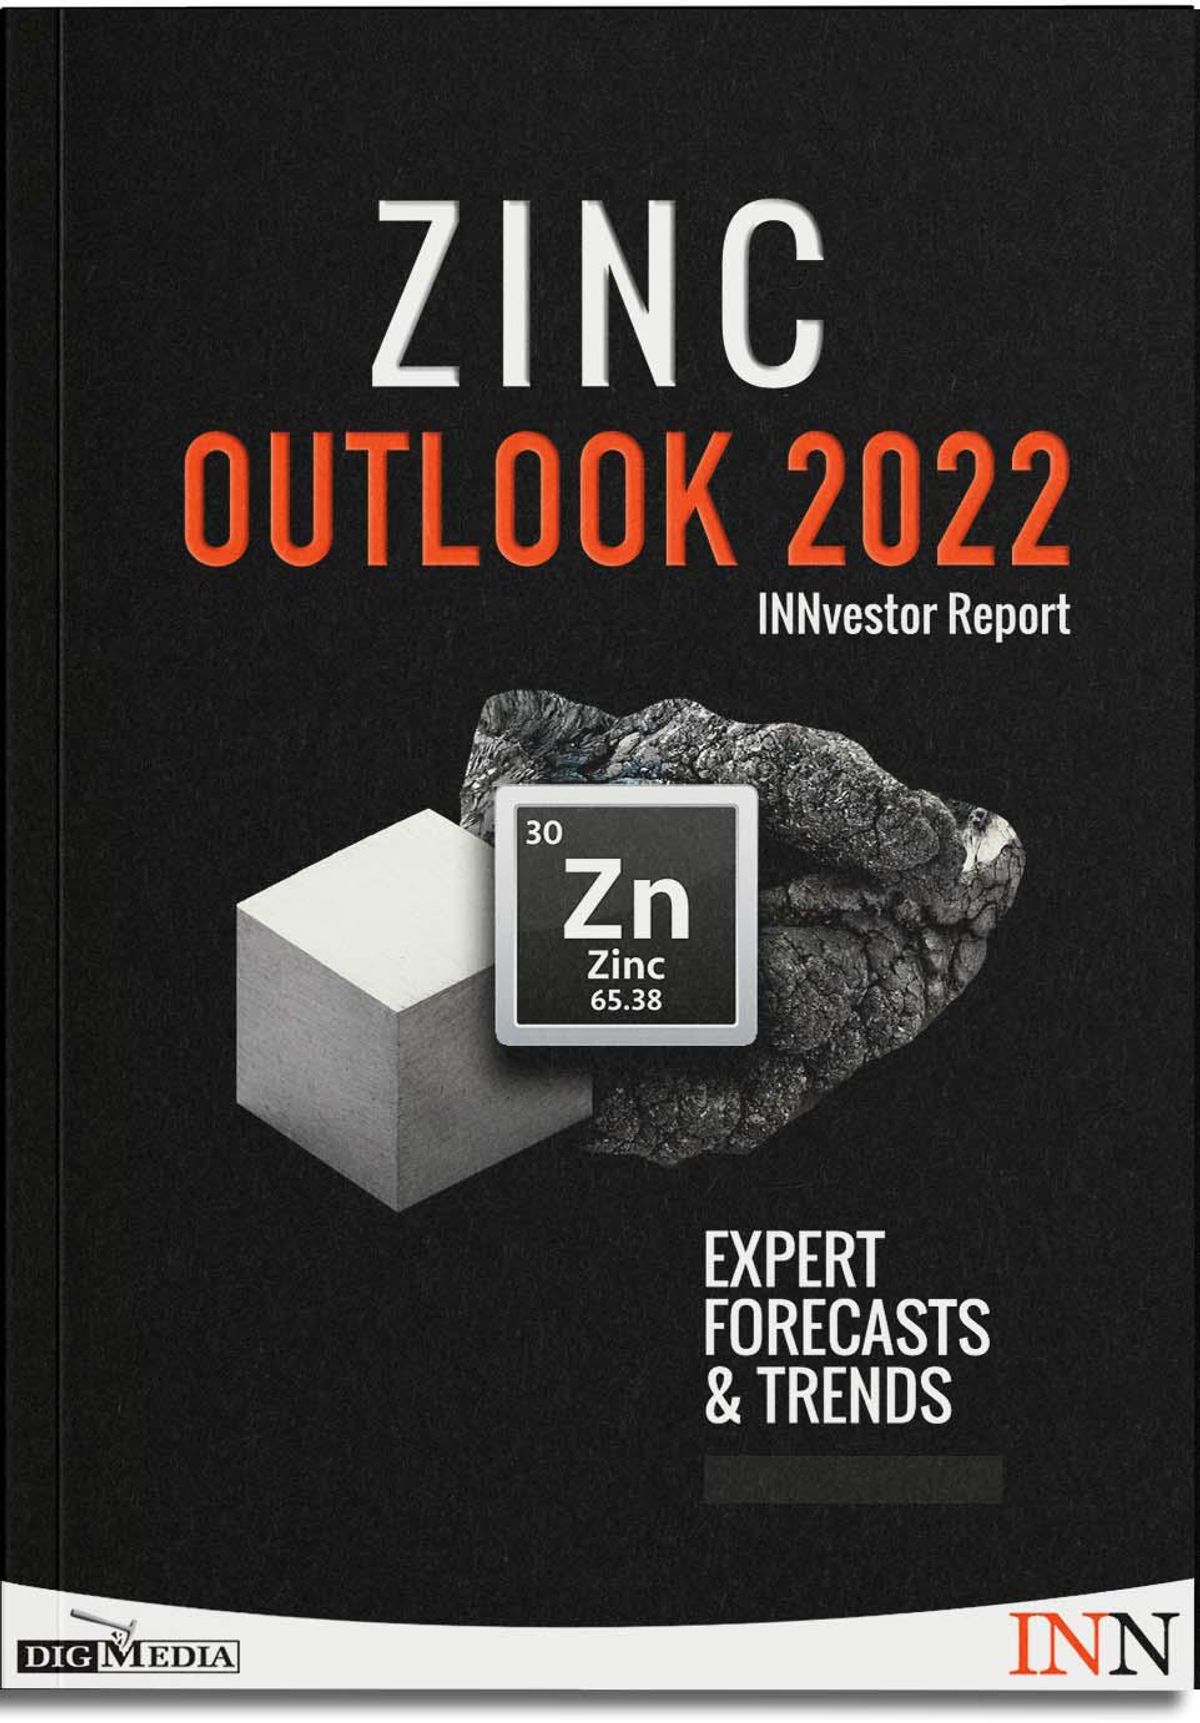 Zinc Outlook 2022 Report